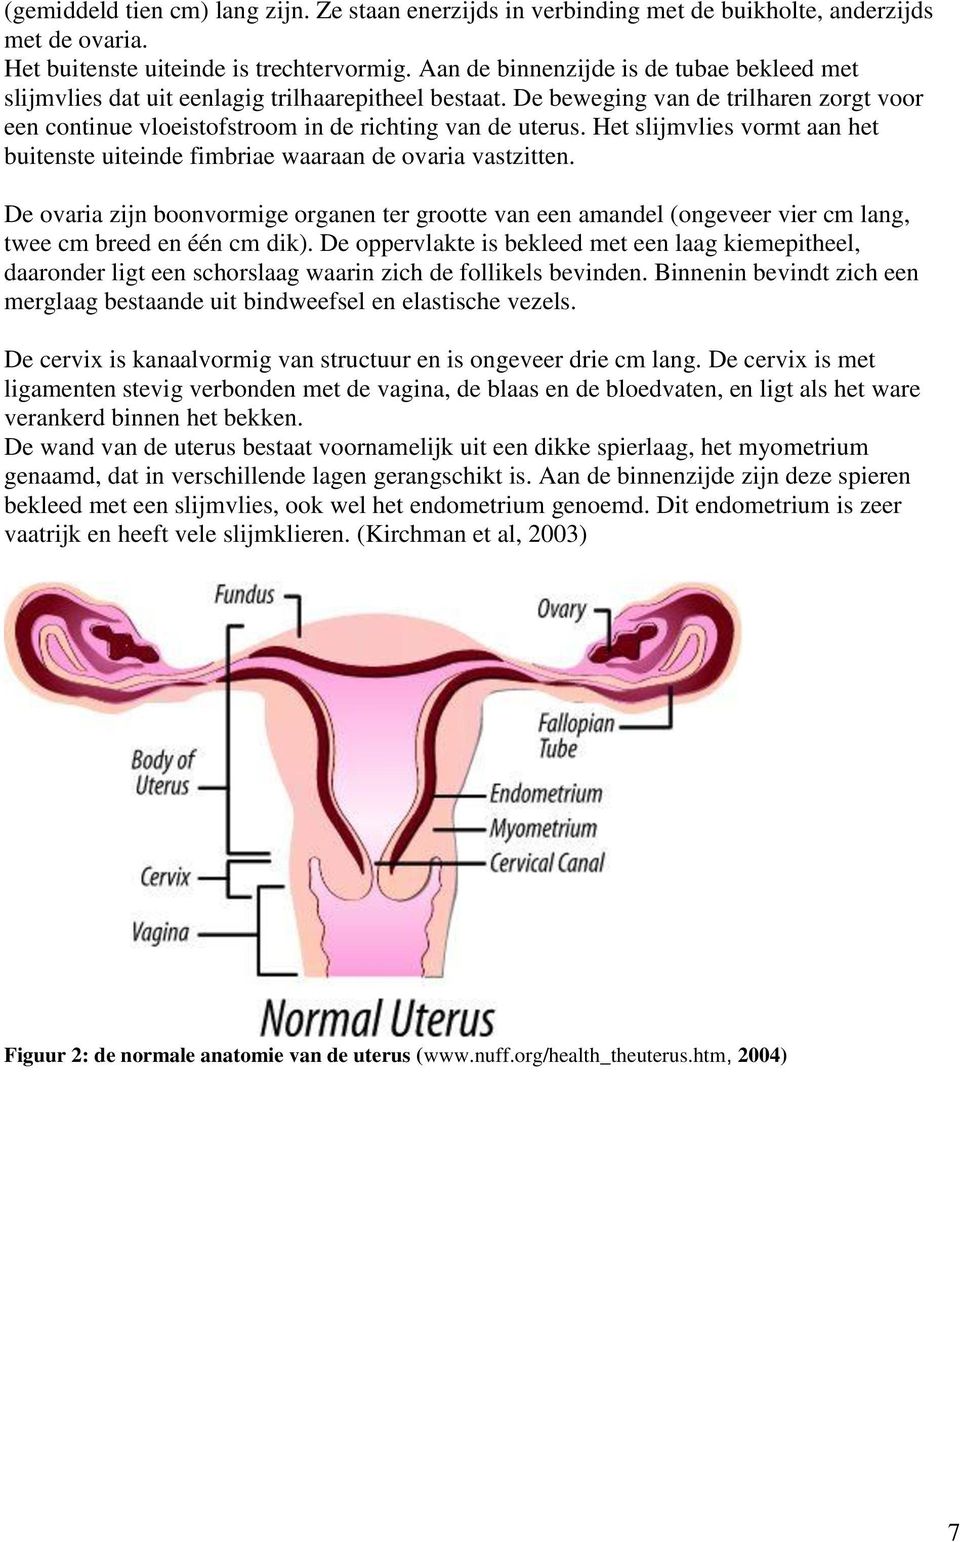 Het slijmvlies vormt aan het buitenste uiteinde fimbriae waaraan de ovaria vastzitten.